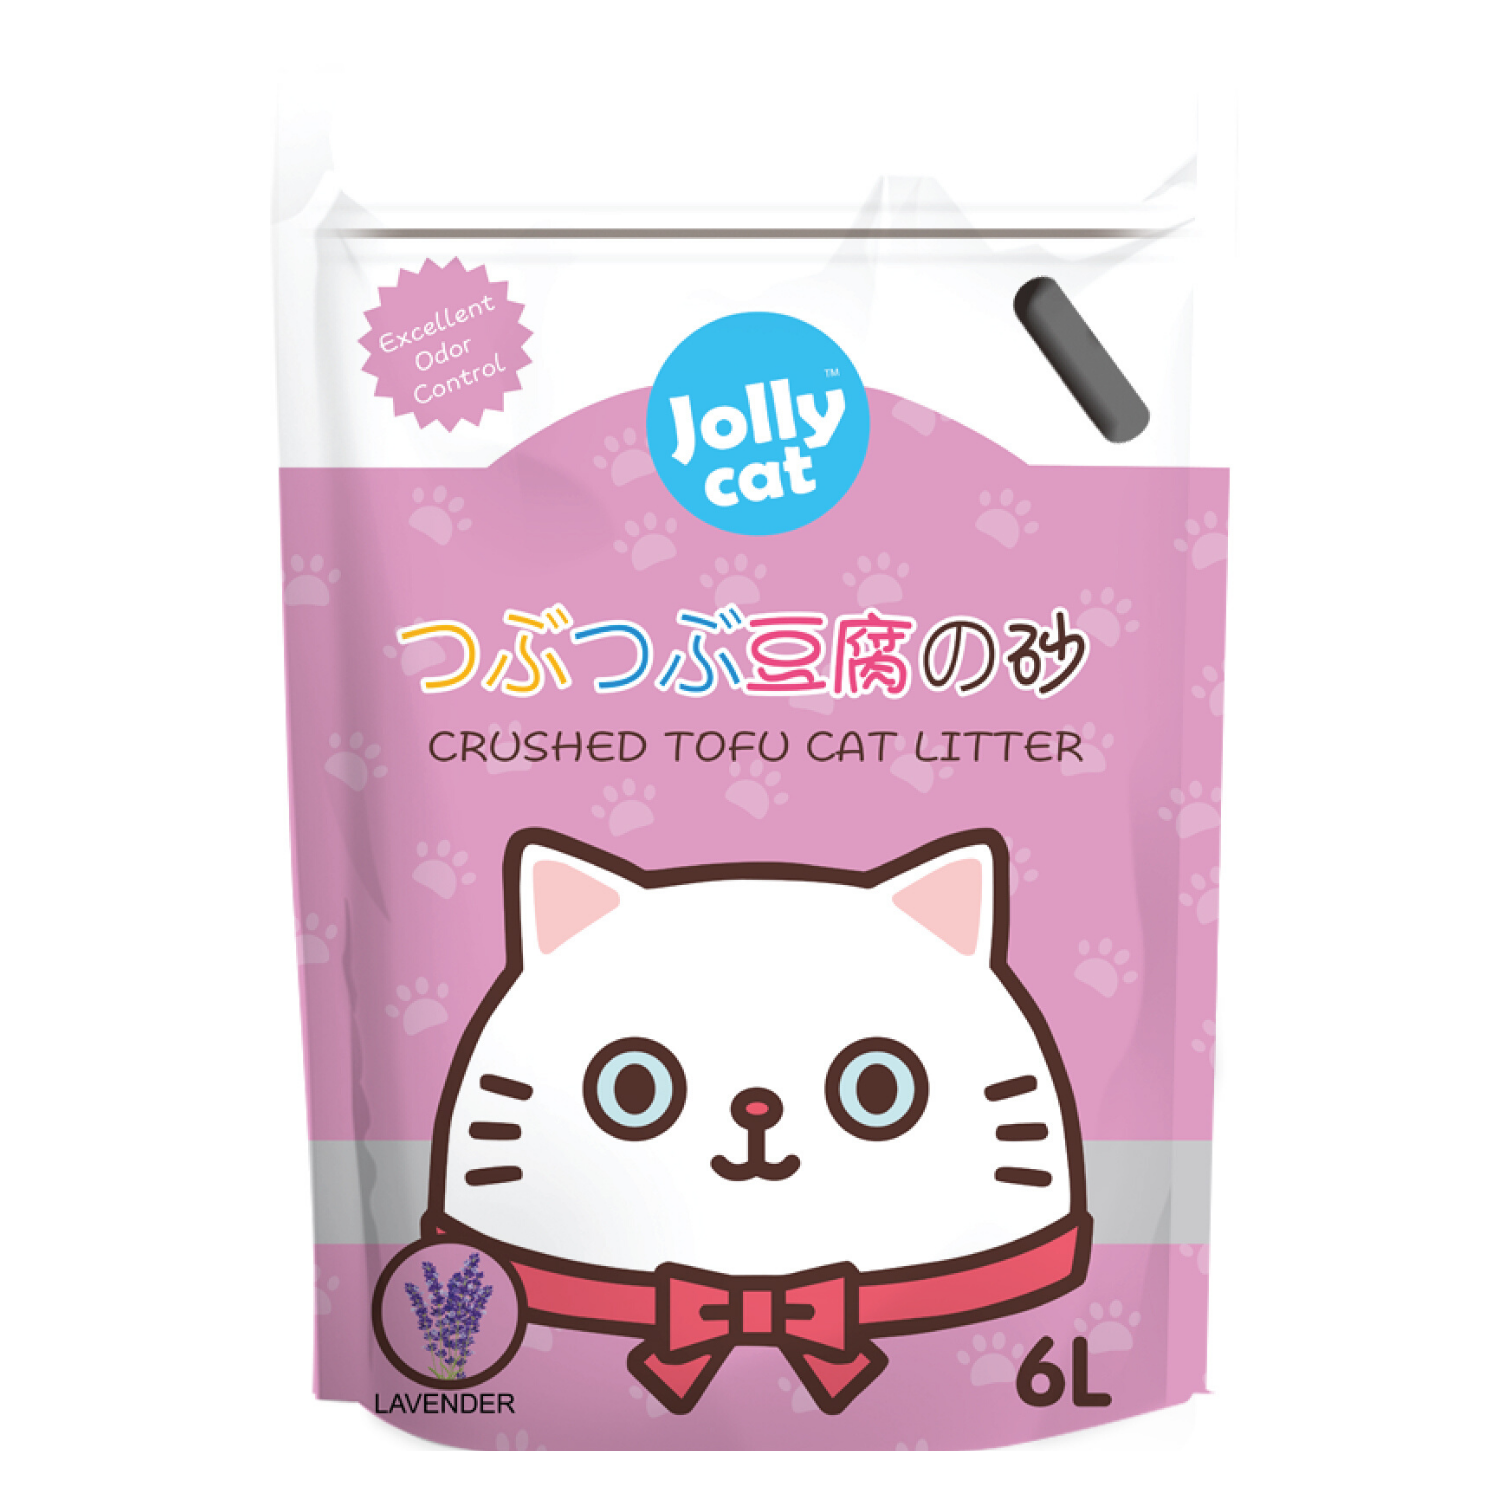 Jollycat Crushed Tofu Litter (Lavender) - 6L